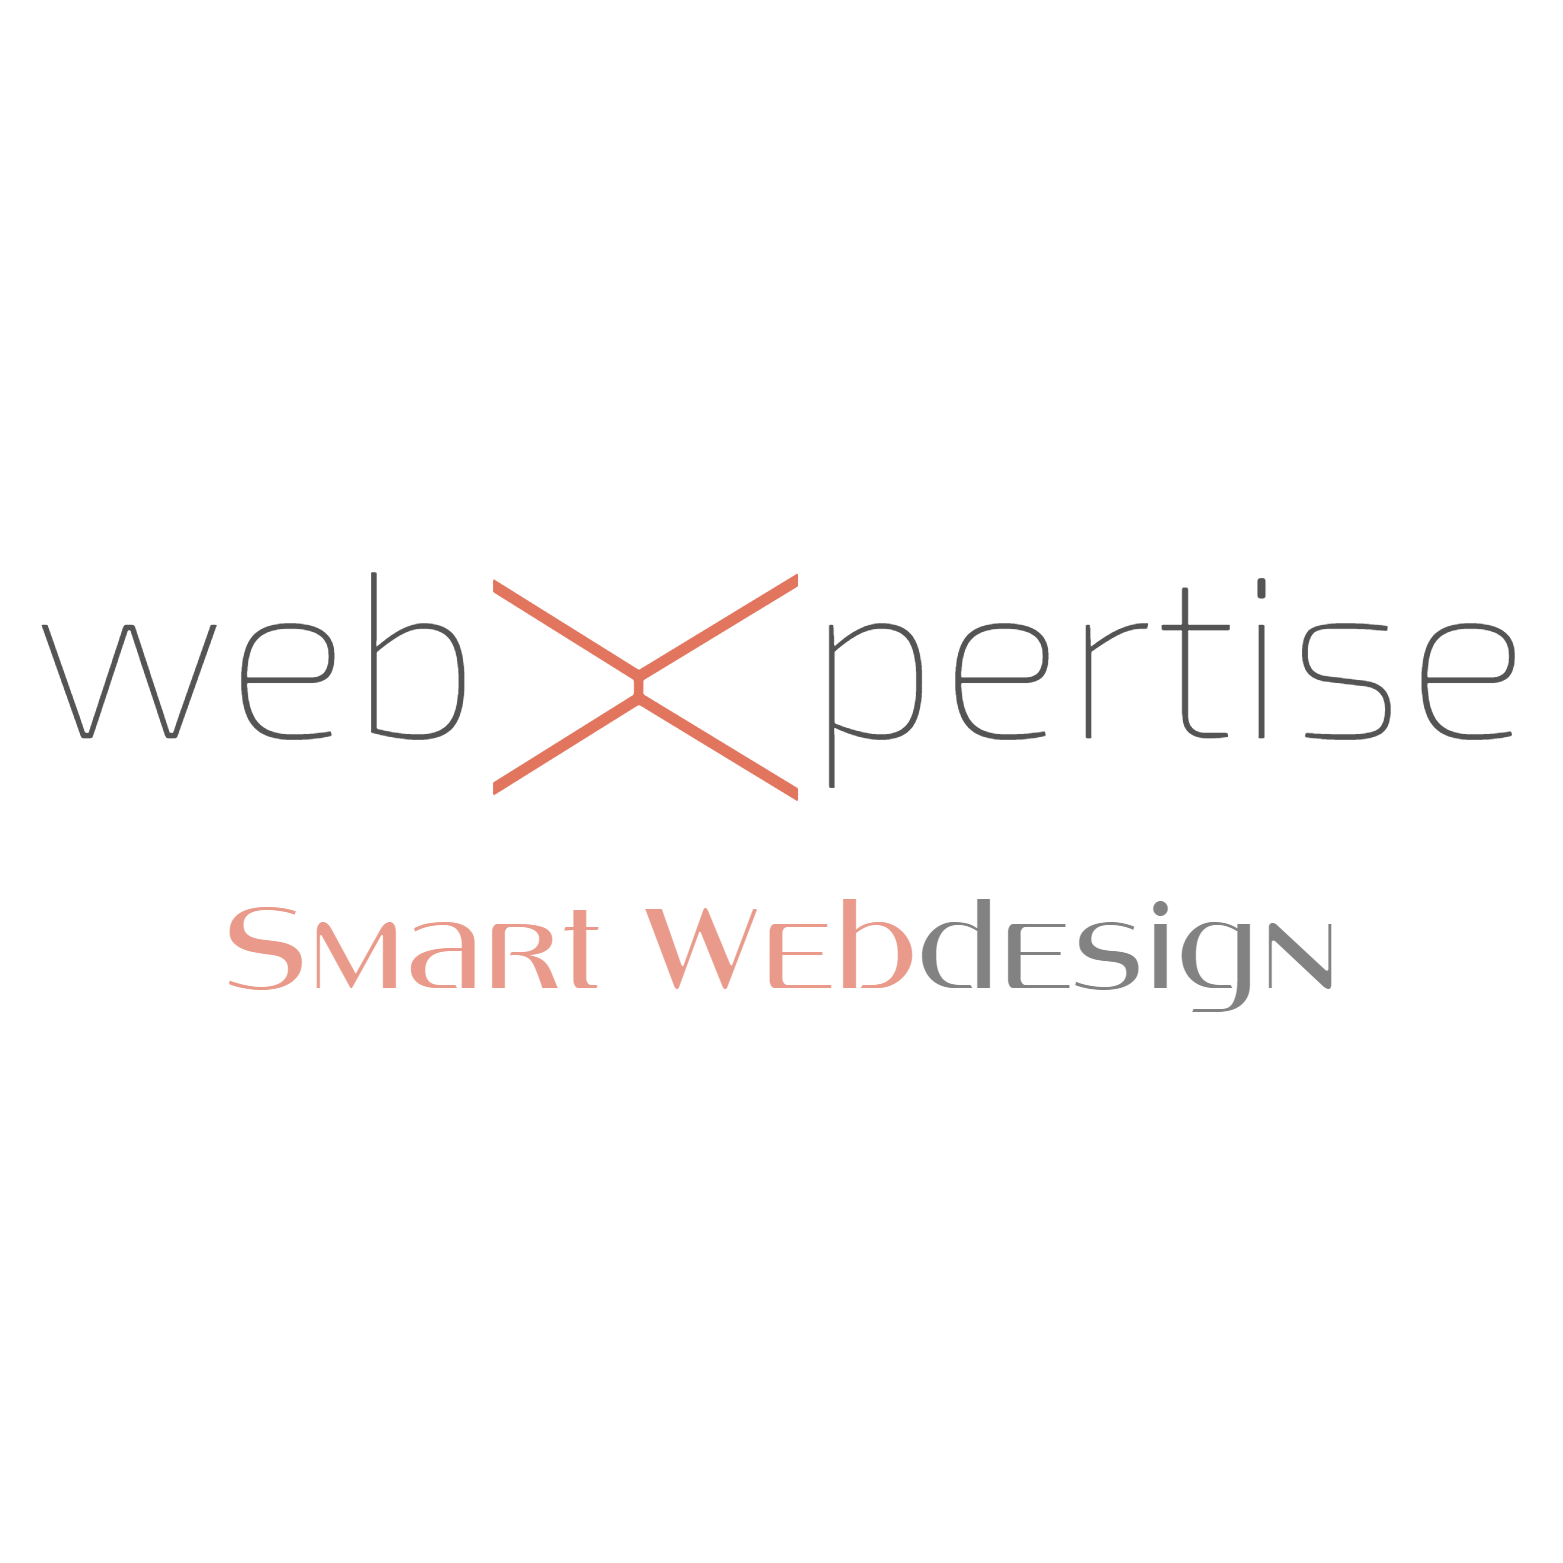 WebXpertise logo ok red pazs de fond